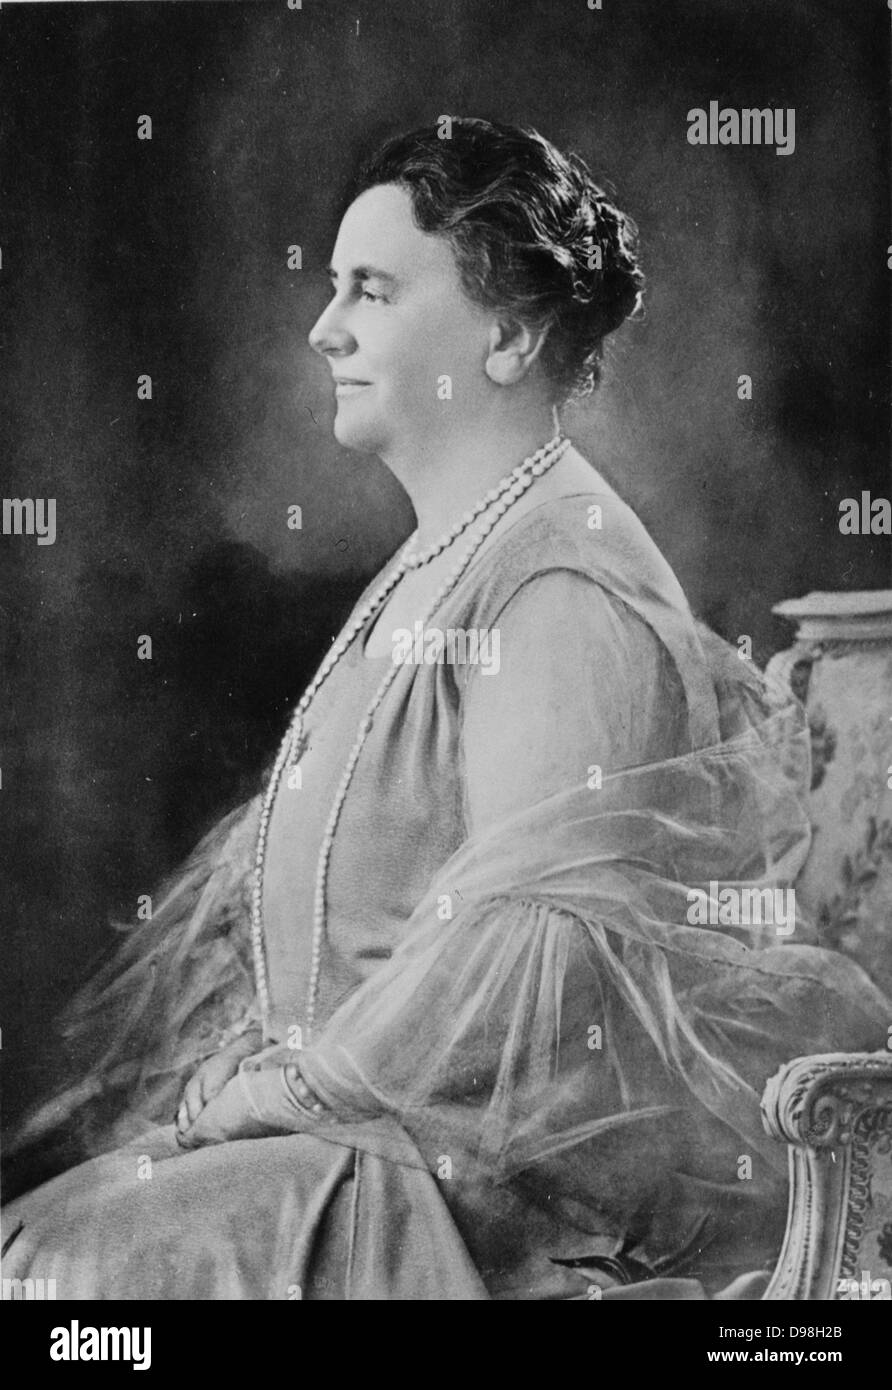 Wilhelmina 31 Agosto 1880 - 28 novembre 1962) era regnant Regina del Regno dei Paesi Bassi dal 1890 al 1948. Ella ha stabilito nei Paesi Bassi per cinquanta-otto anni, più di qualsiasi altro monarca olandese. Il suo regno ha visto la guerra mondiale I e II Guerra Mondiale Foto Stock